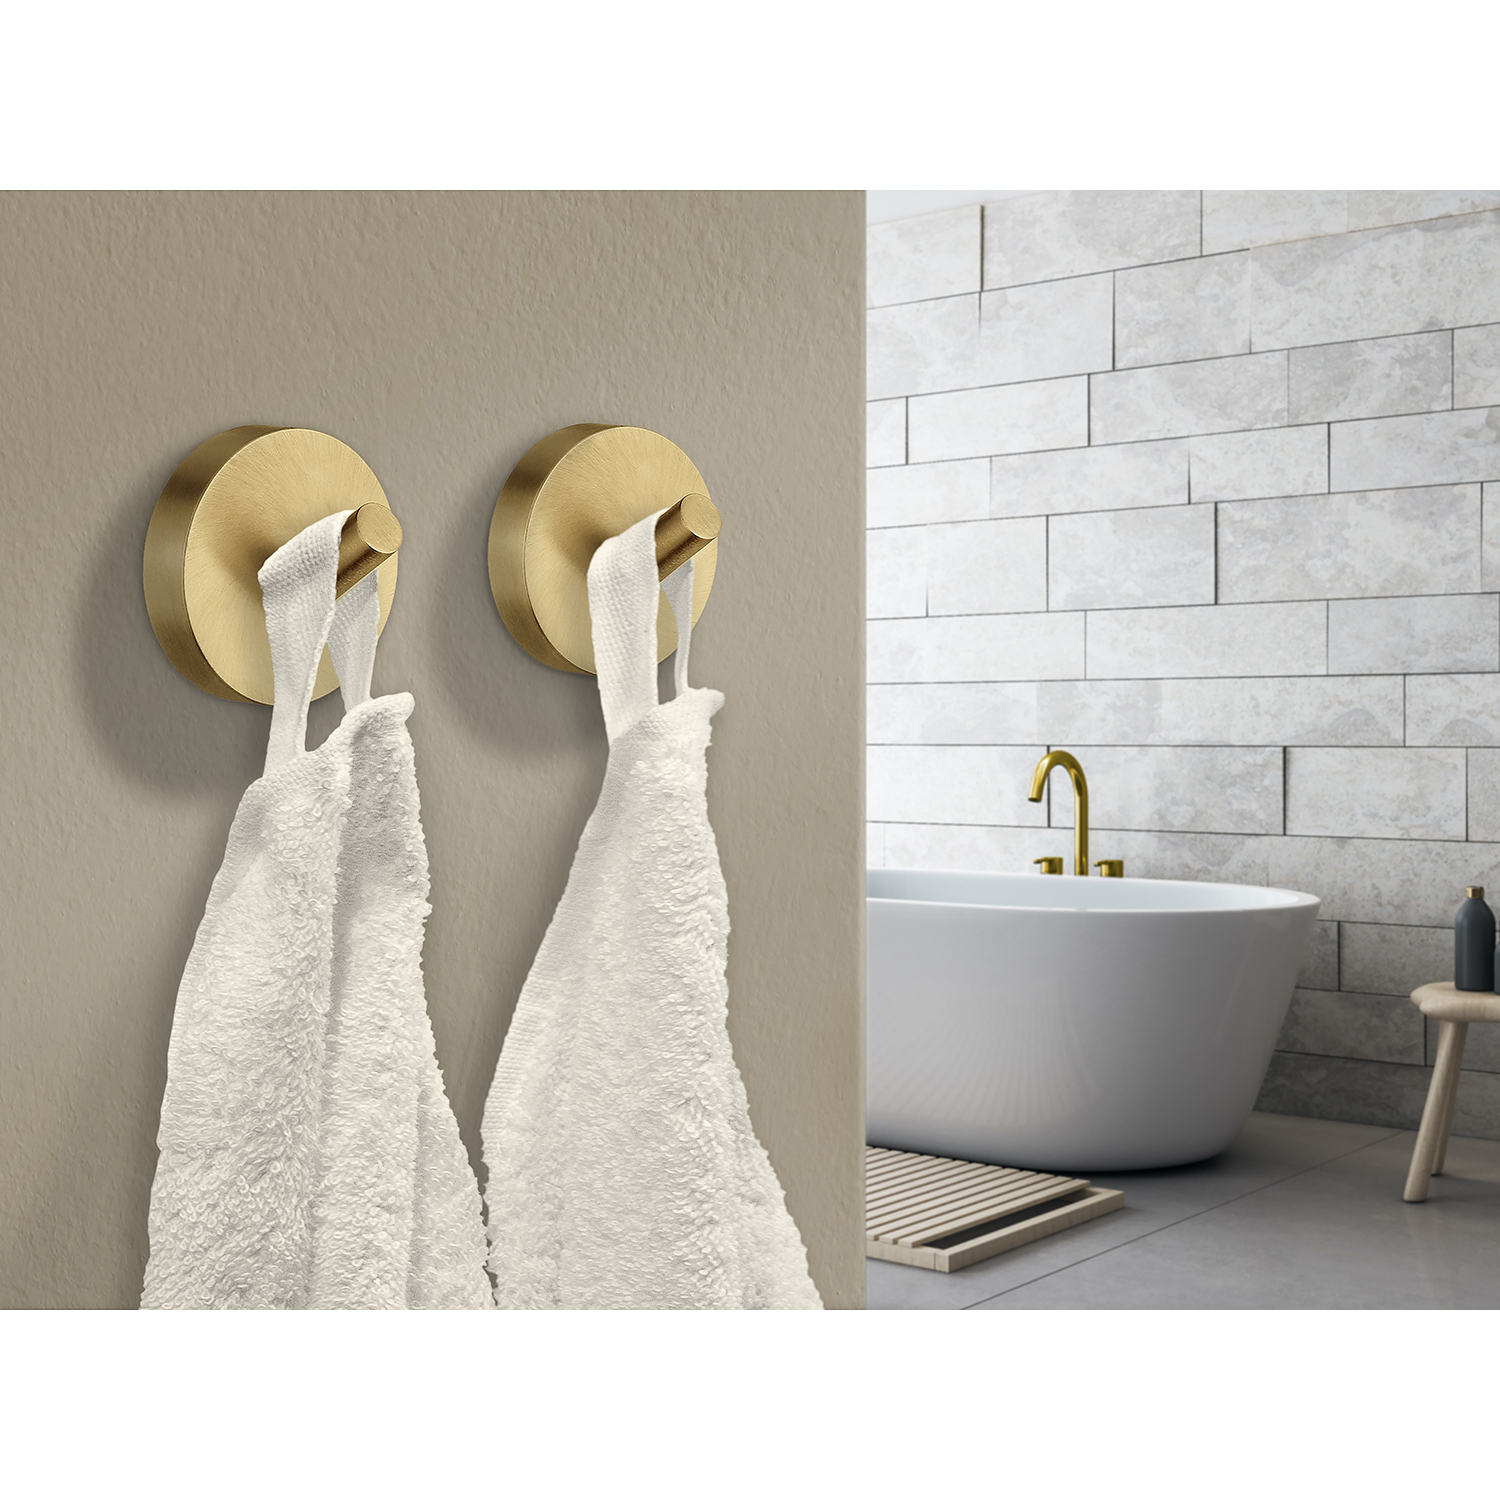 Gancho toallero de latón cepillado Smedbo Home Series Accesorios de baño